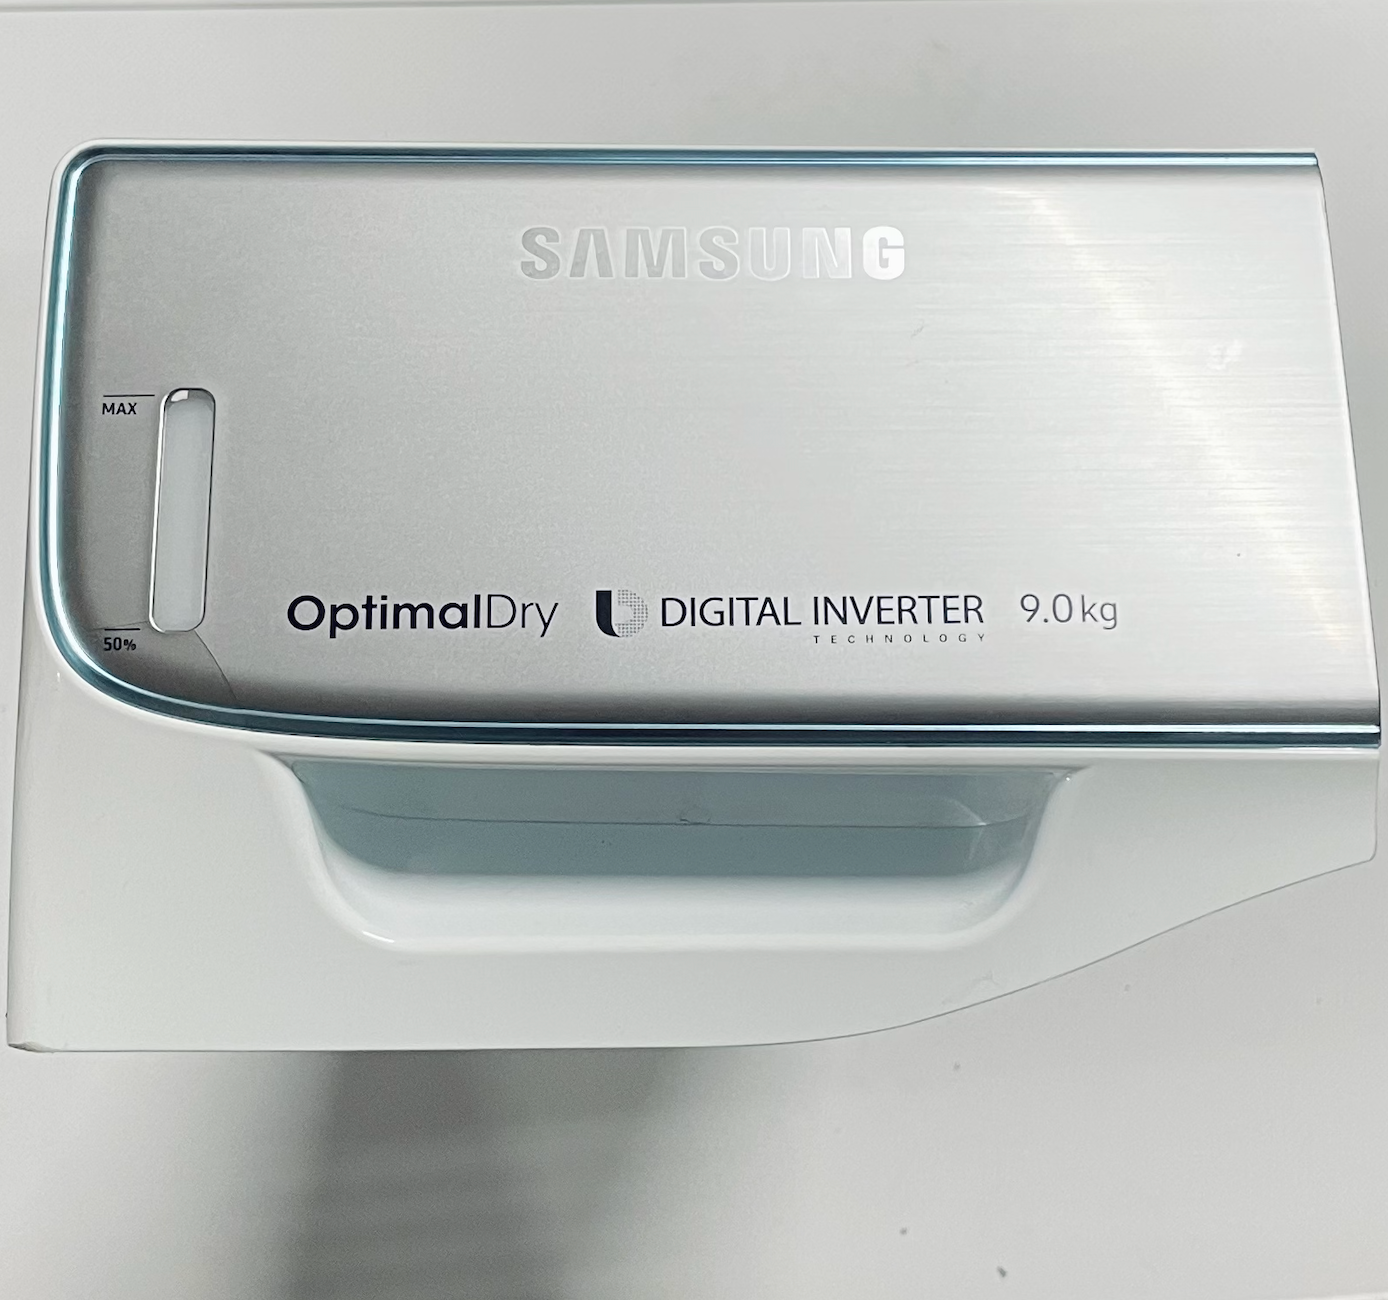 Vanntank/kondensbeholder sett til Samsung OptimalDry